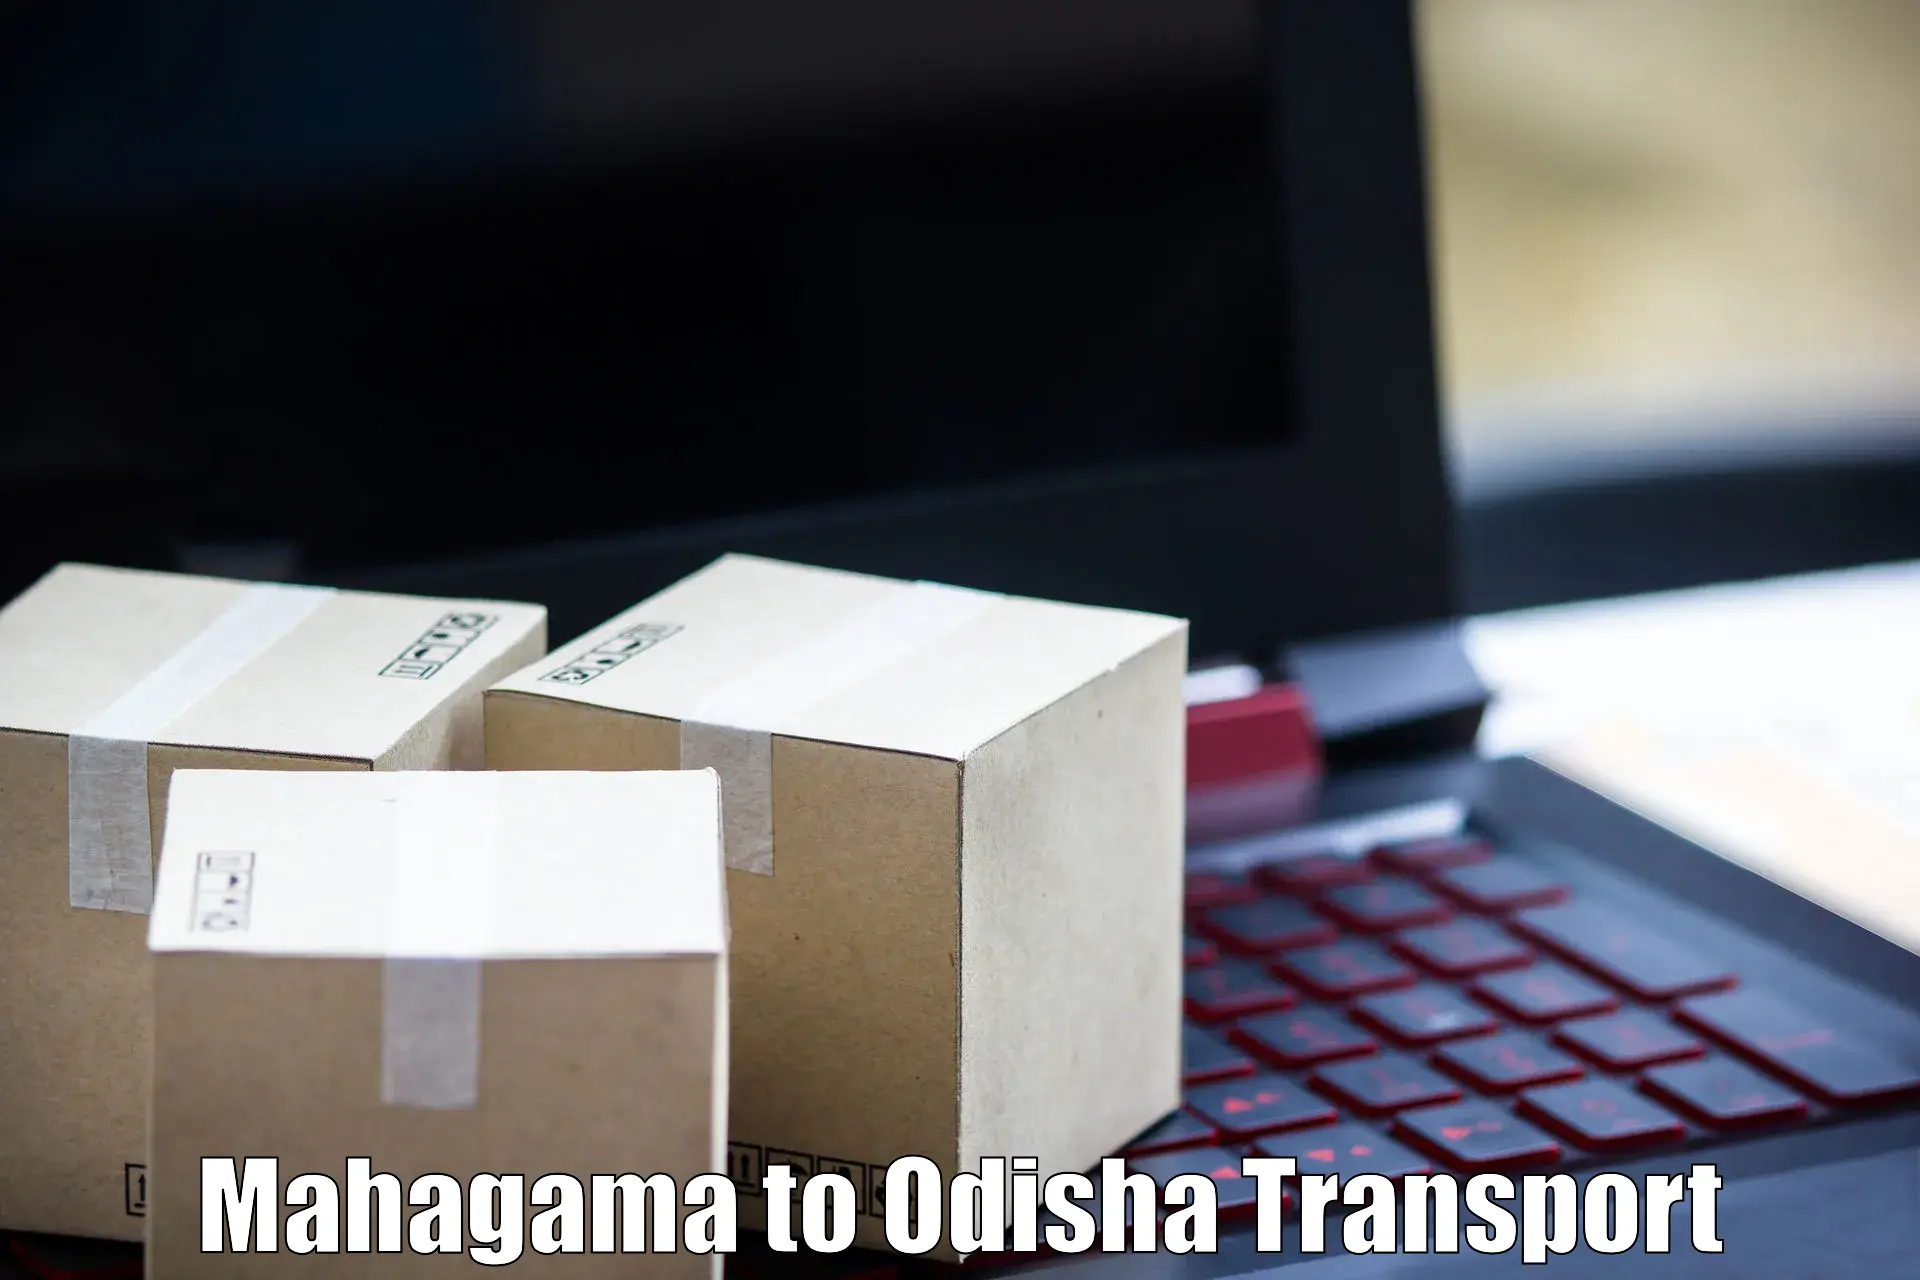 Domestic transport services Mahagama to Pallahara